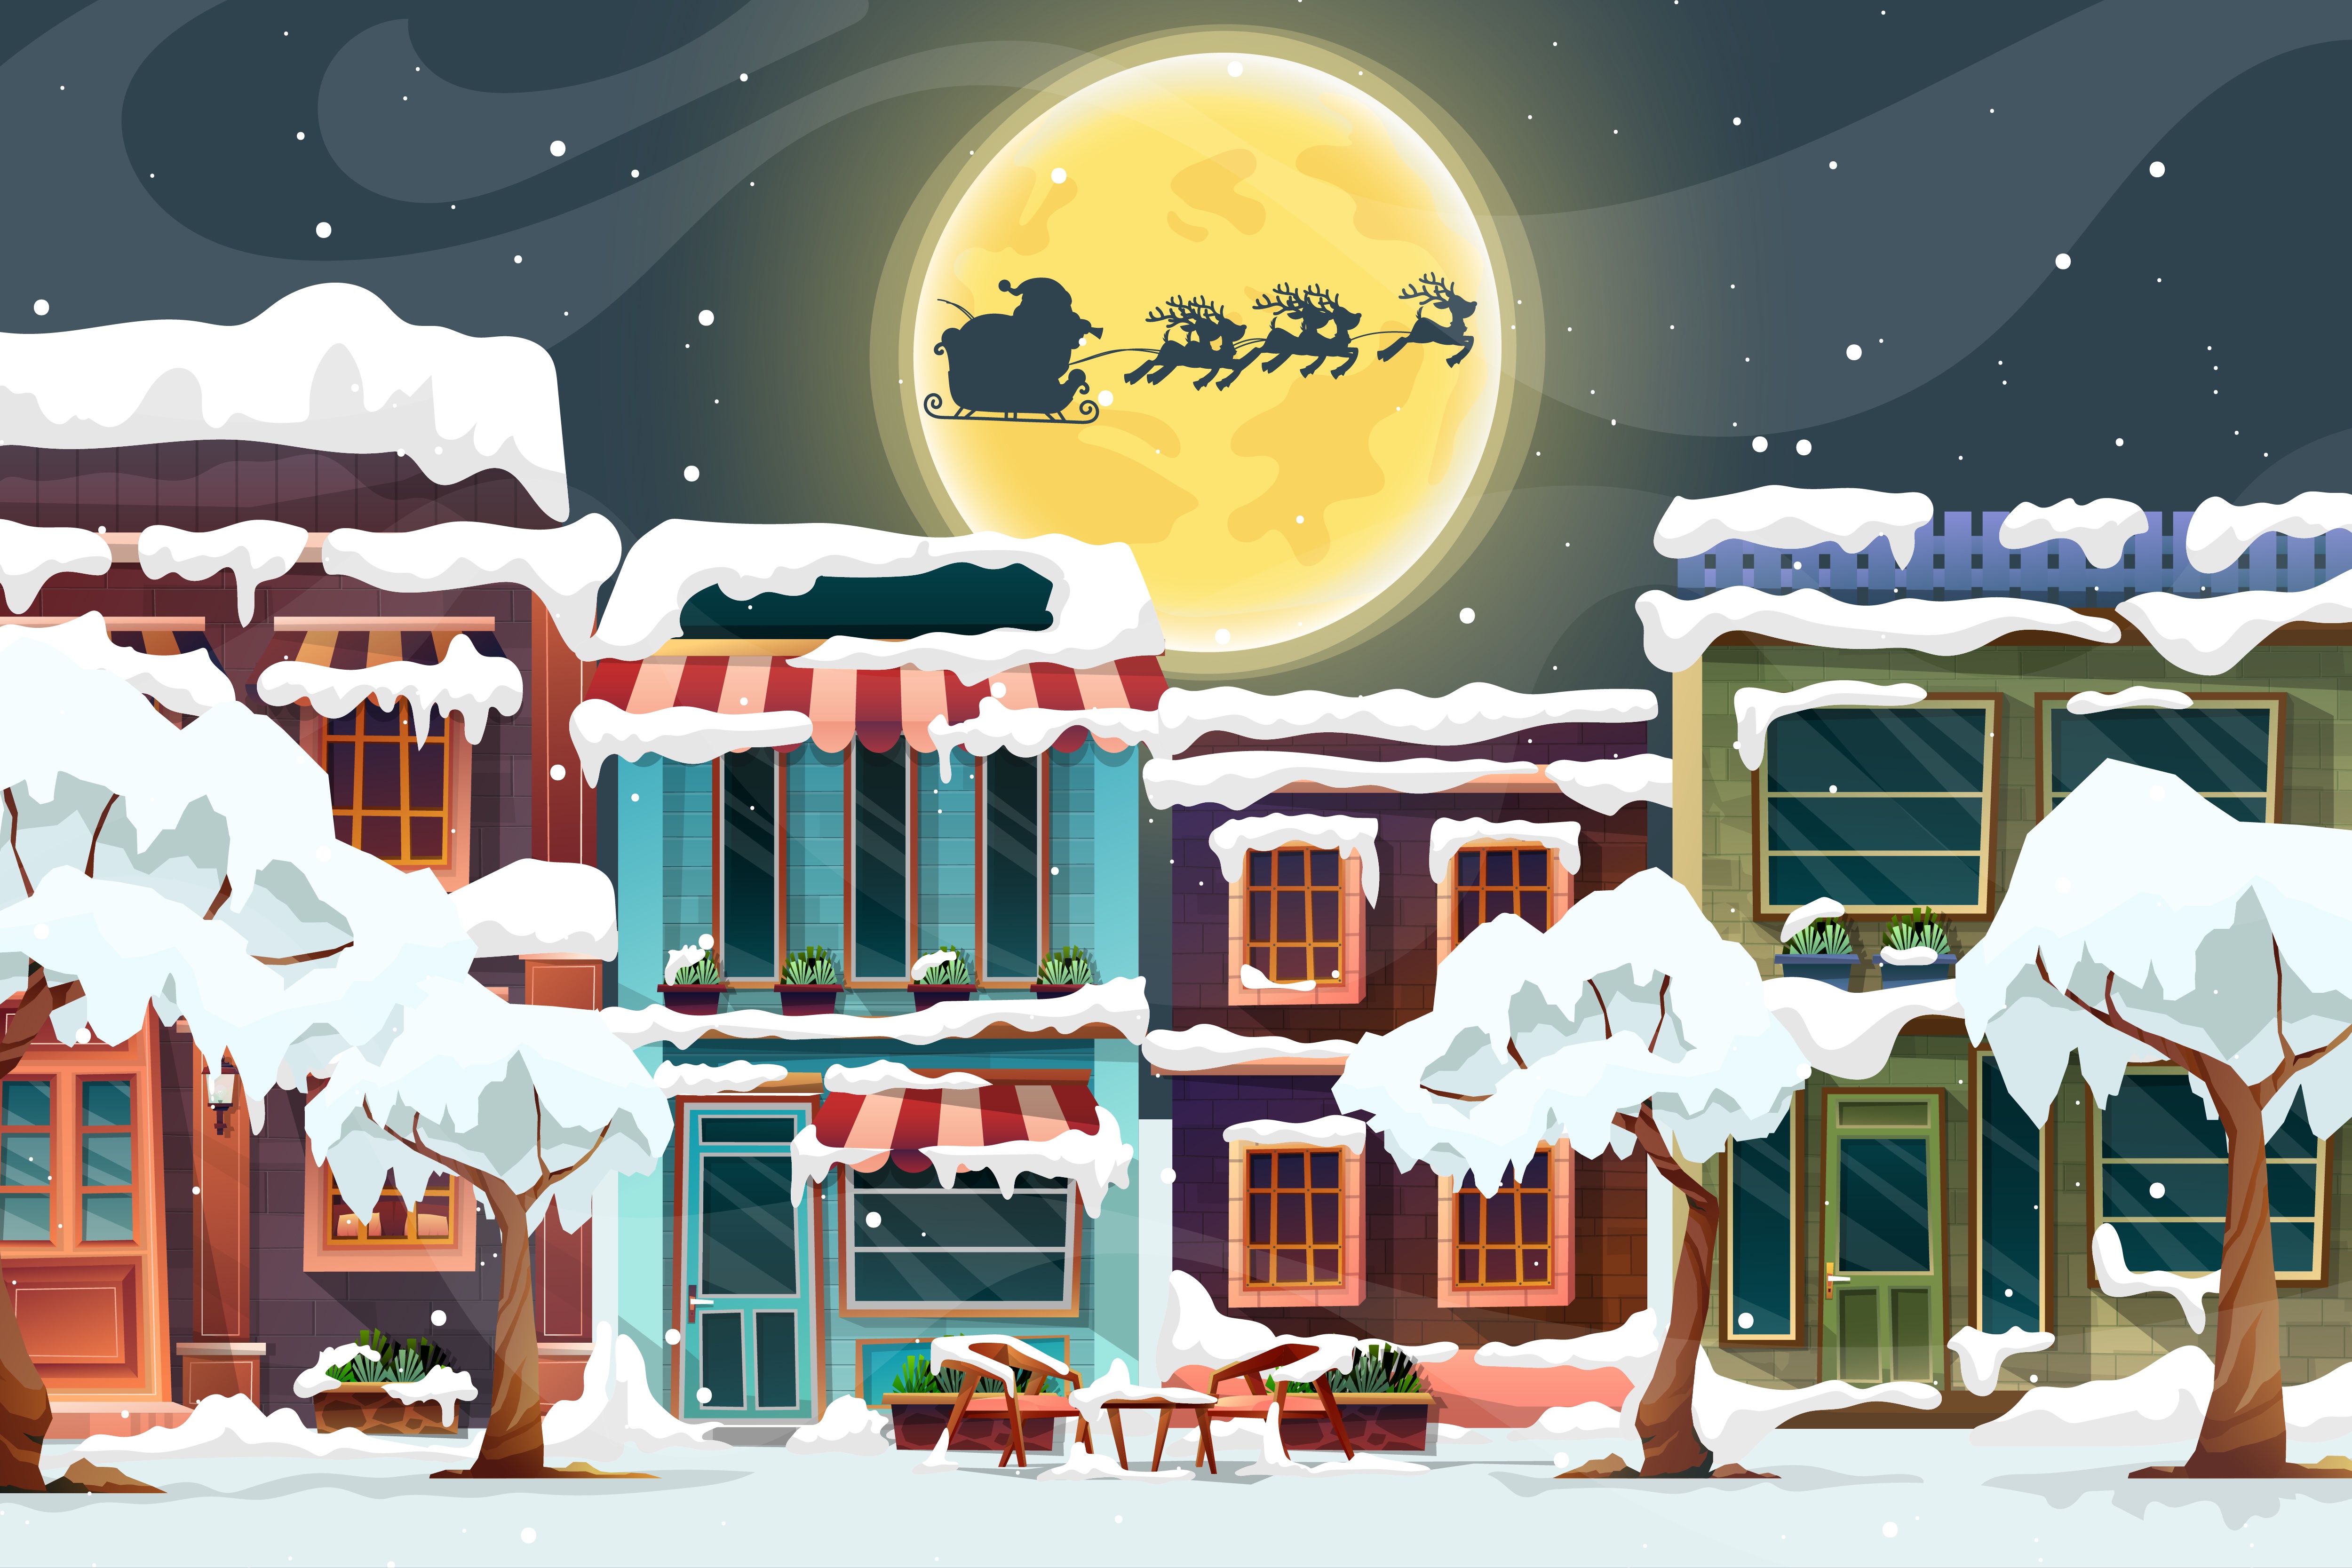 General 5000x3334 Christmas Santa Claus snow Moon house building trees reindeer digital art